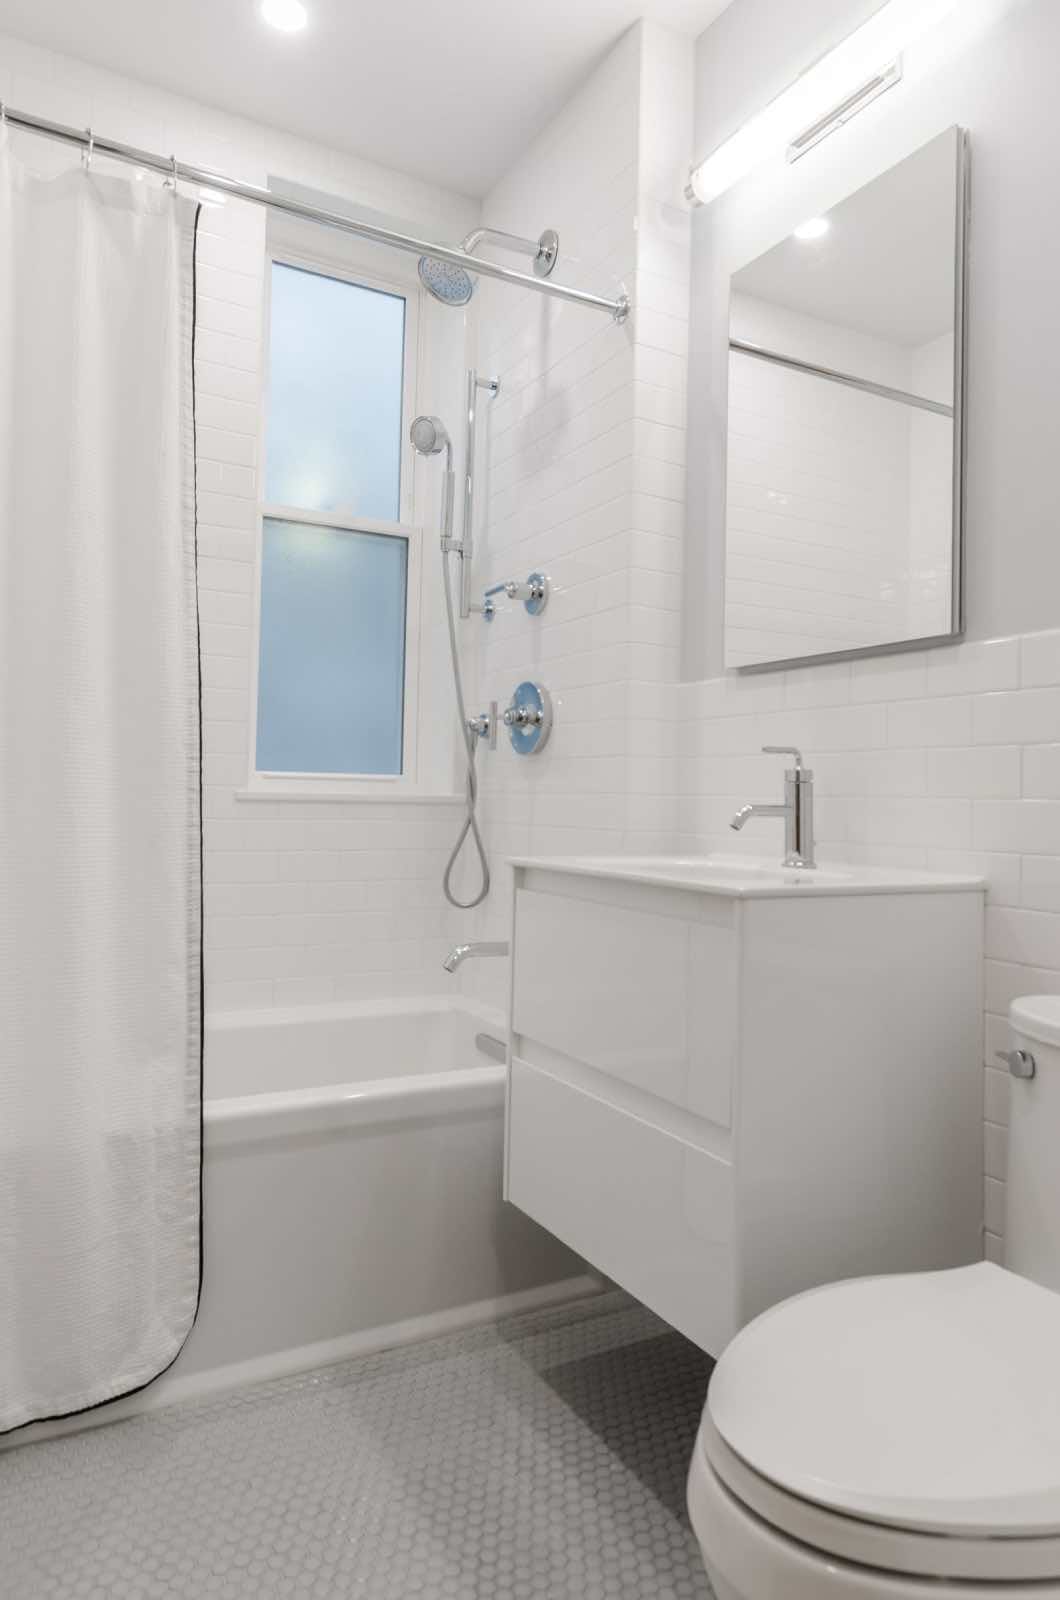 diseño de baño sencillo moderno blanco